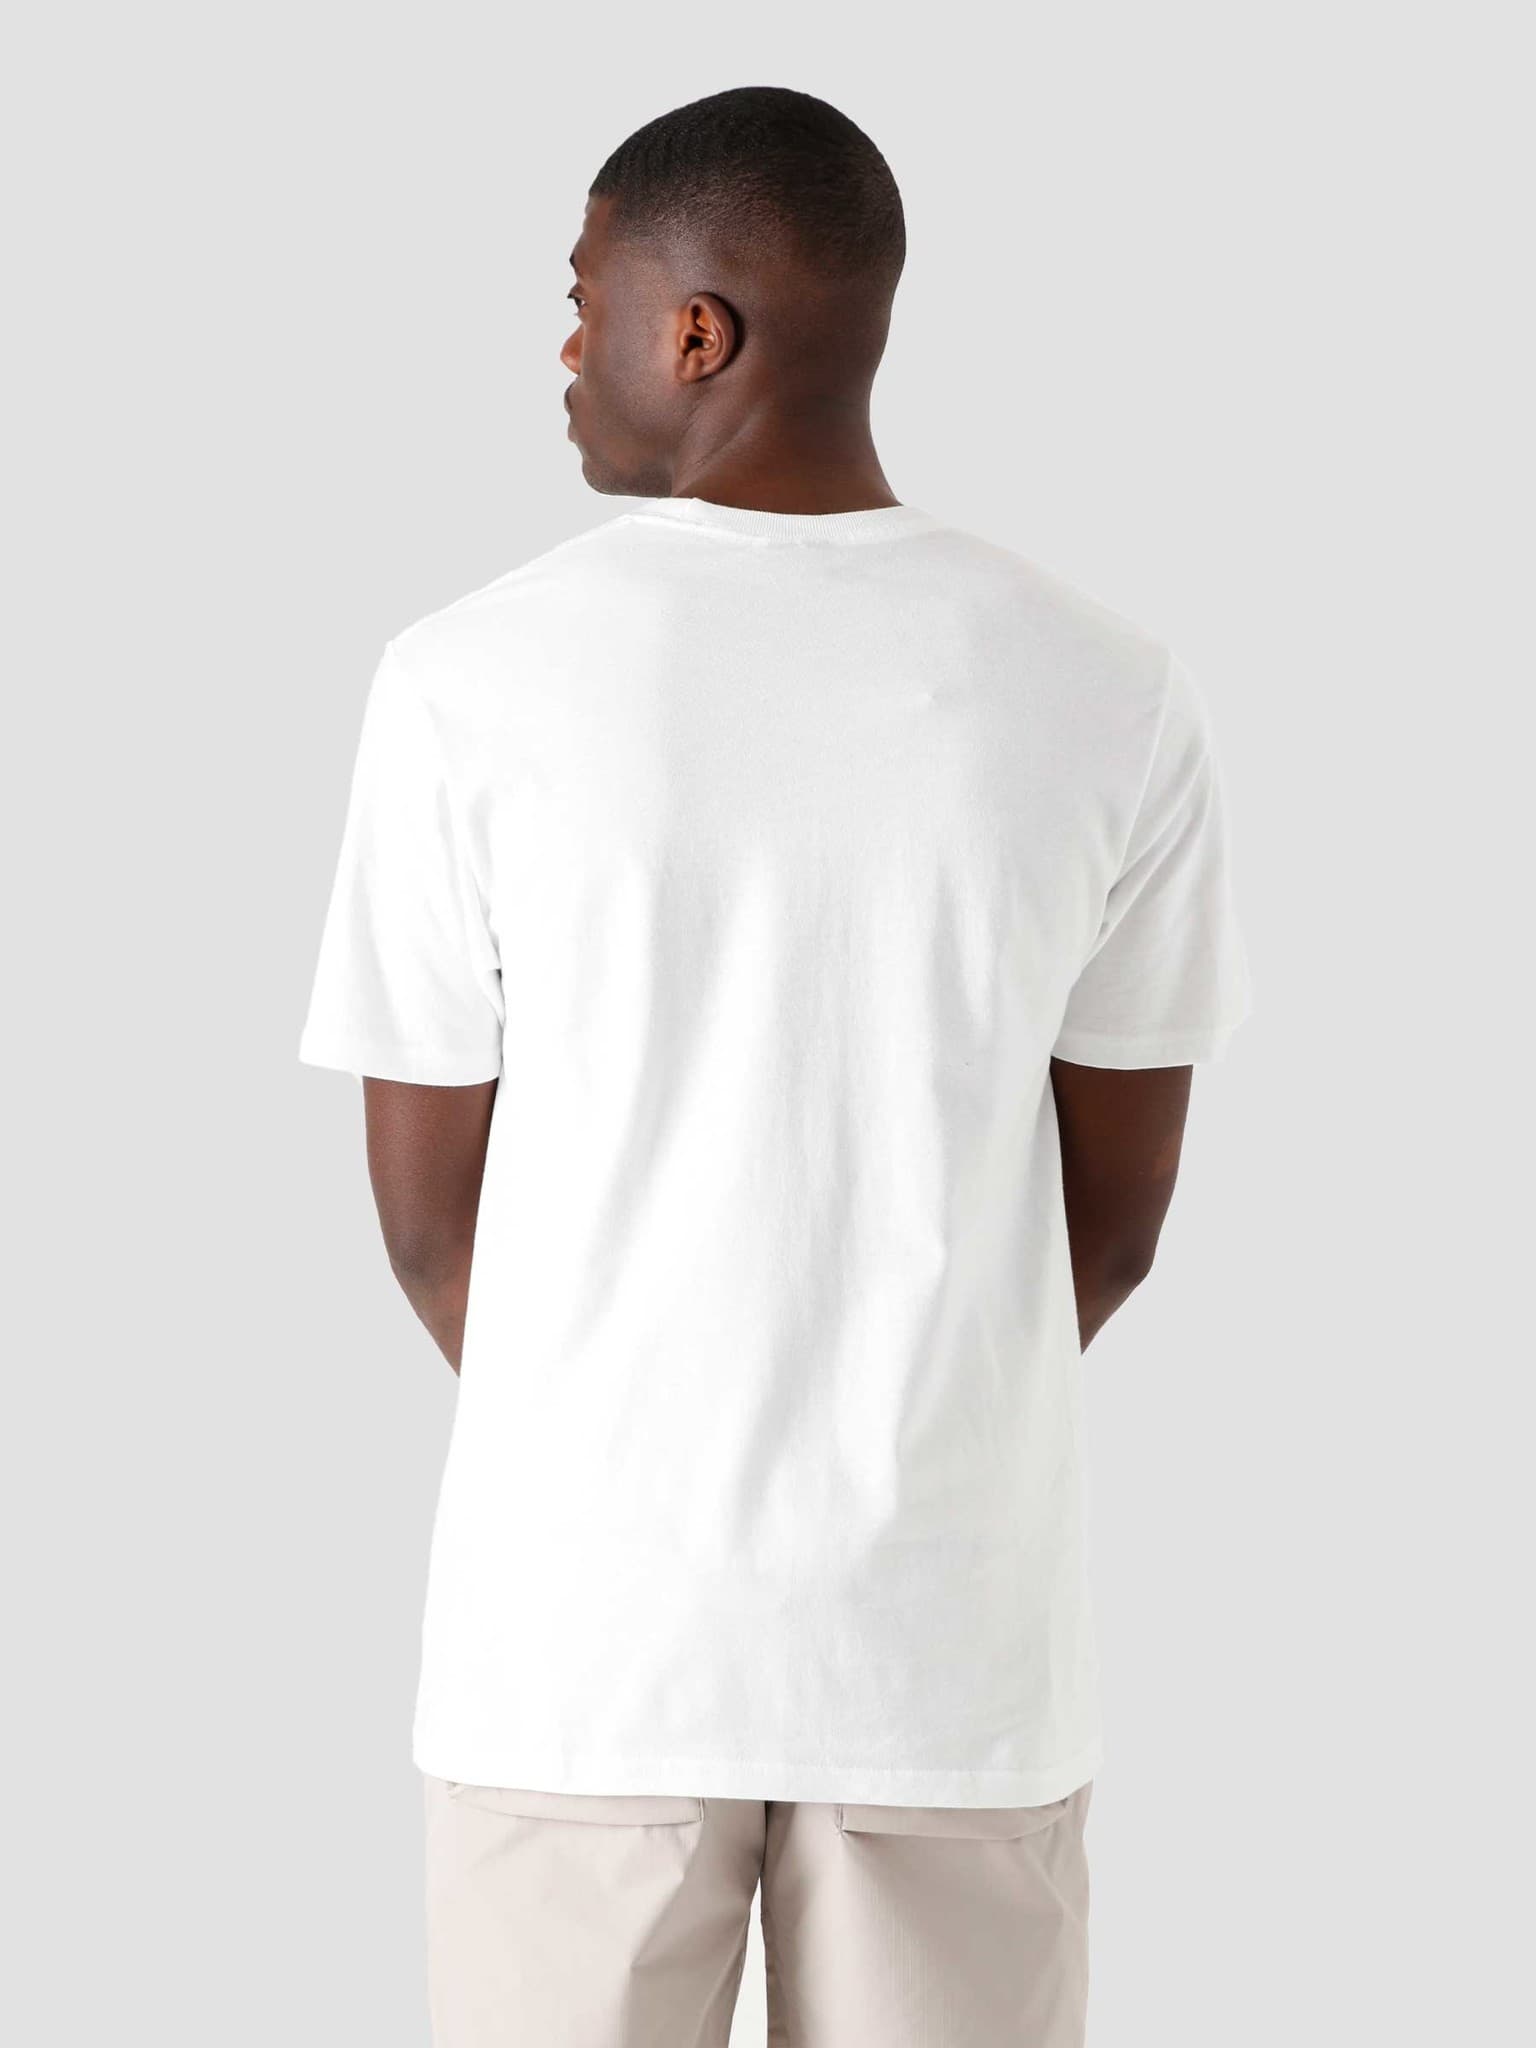 Matchbook T-Shirt White 1904660-1201